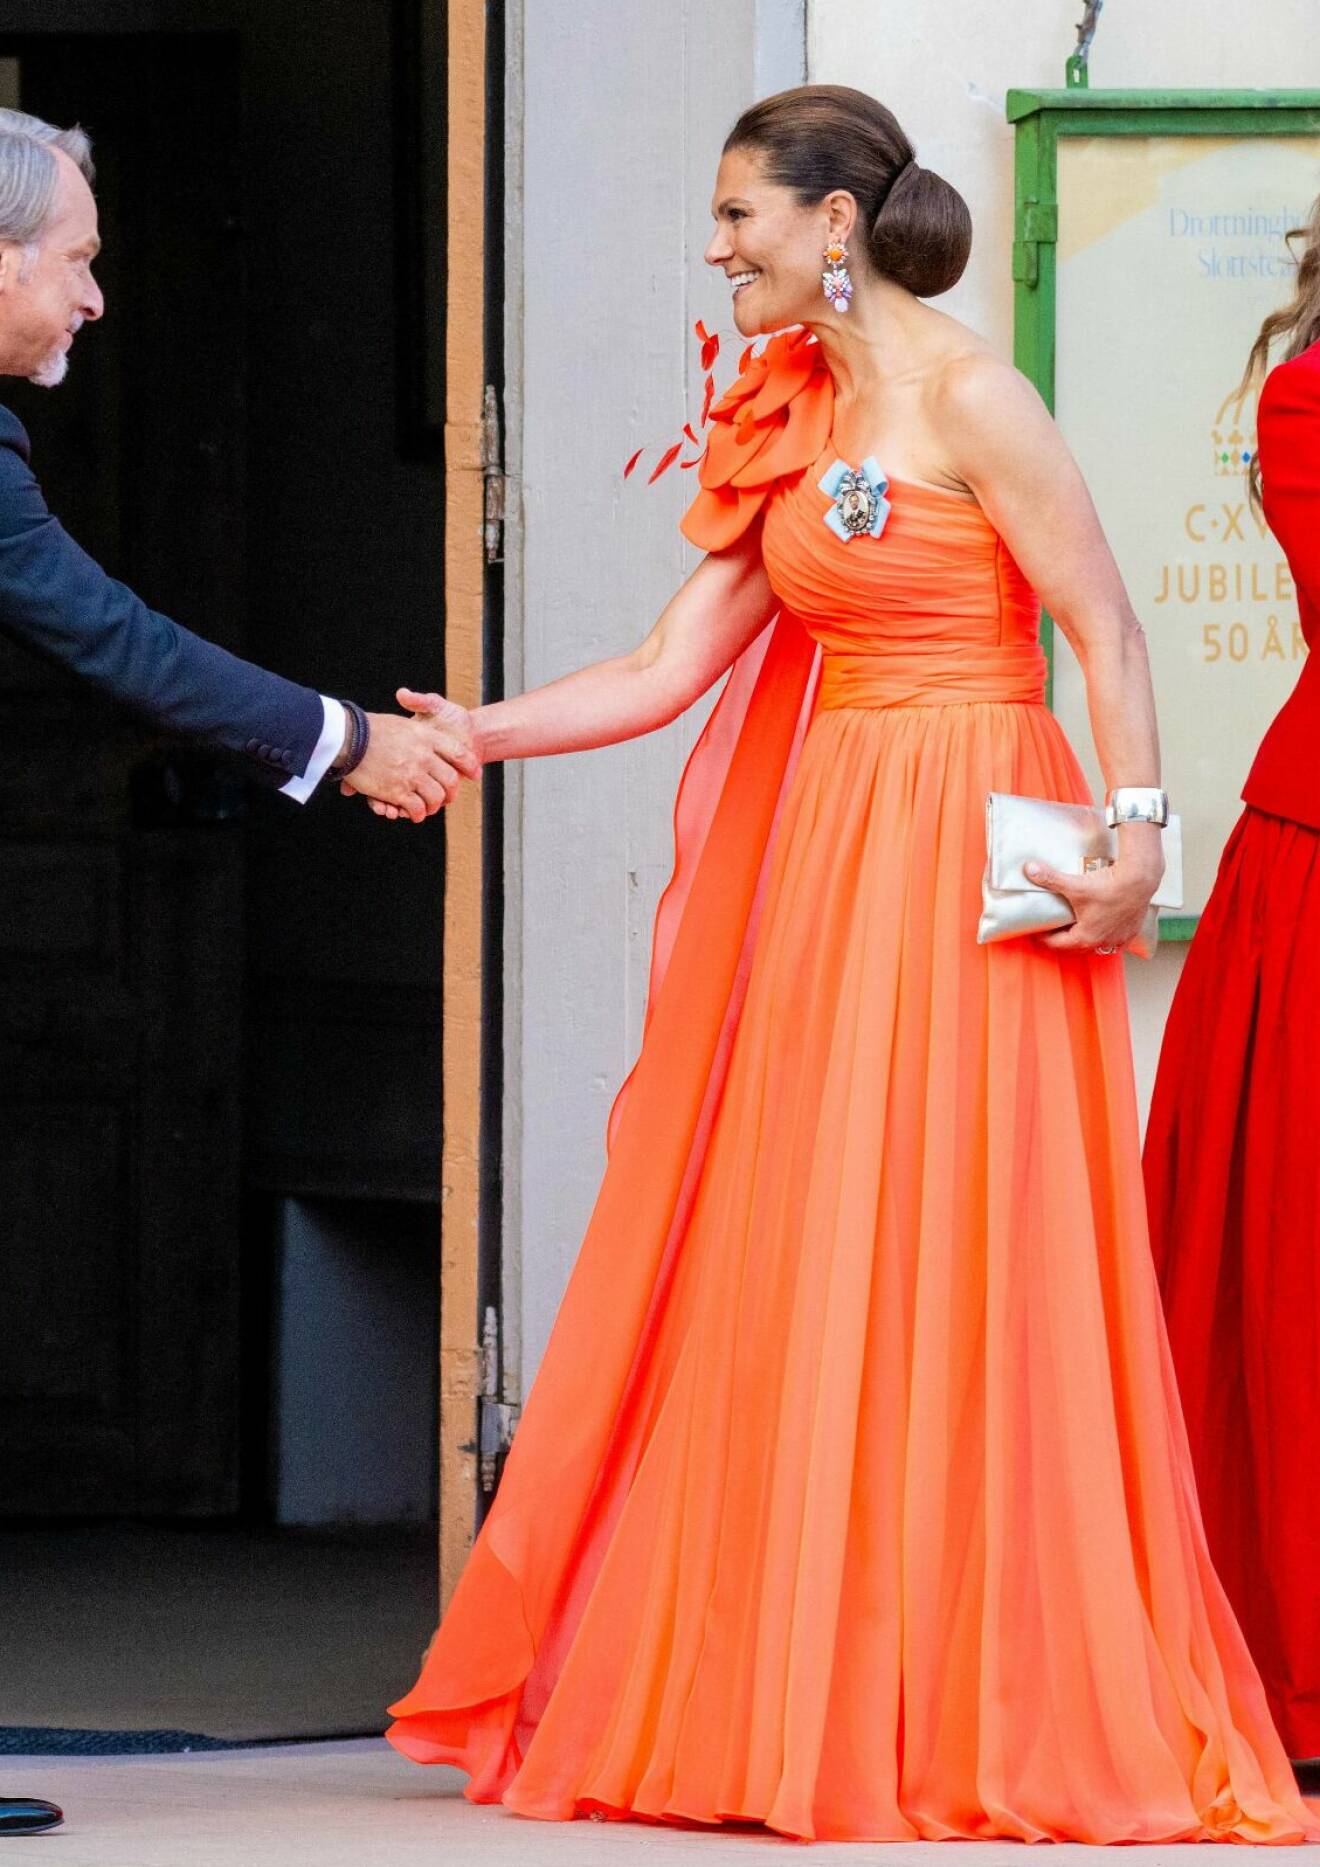 Kronprinsessan Victoria i orange eller korallfärgad aftonklänning designad av Christer Lindarw